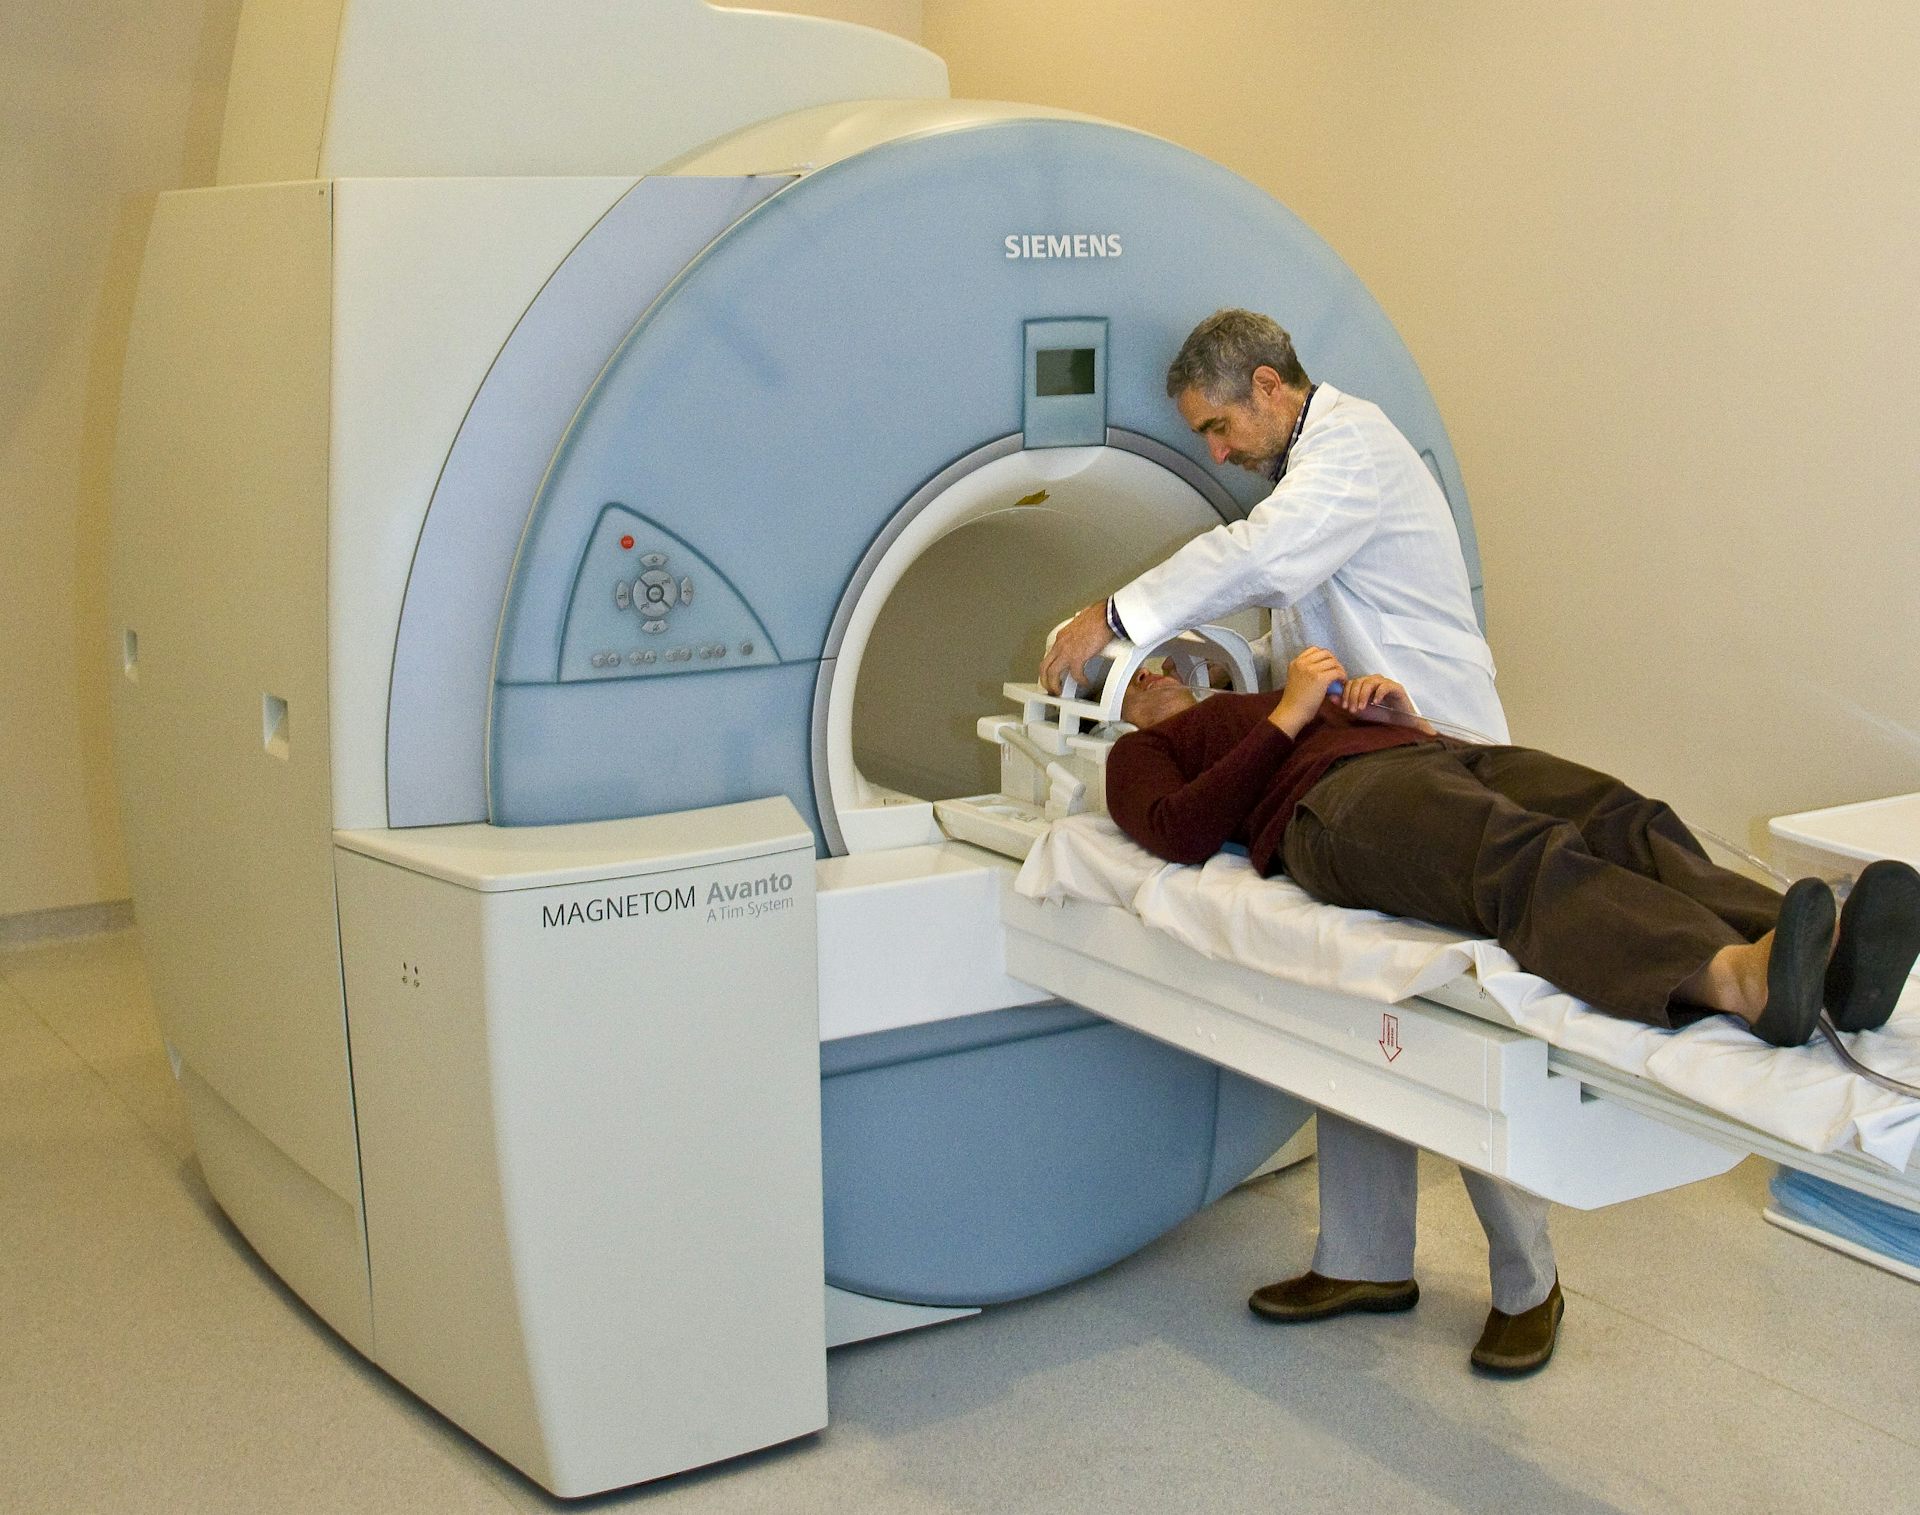 【超歓迎】本The science of medical imaging: magnetic resonance imaging (MRI)